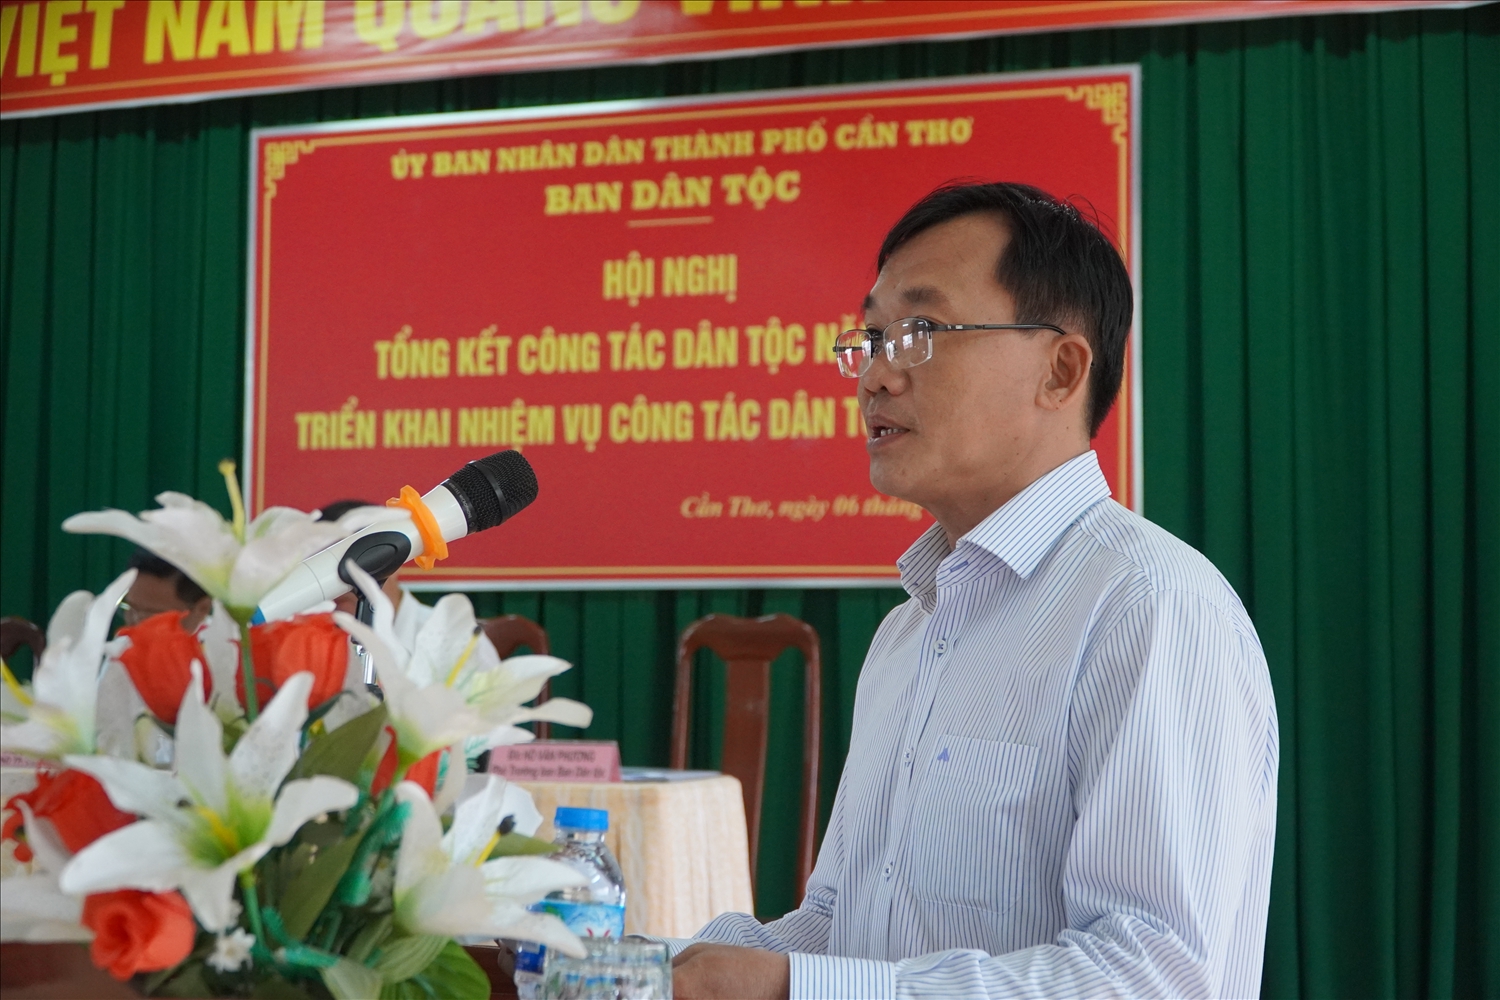 Ông Hồ Văn Phương, Phó Ban Dân tộc TP. Cần Thơ báo cáo tại Hội nghị